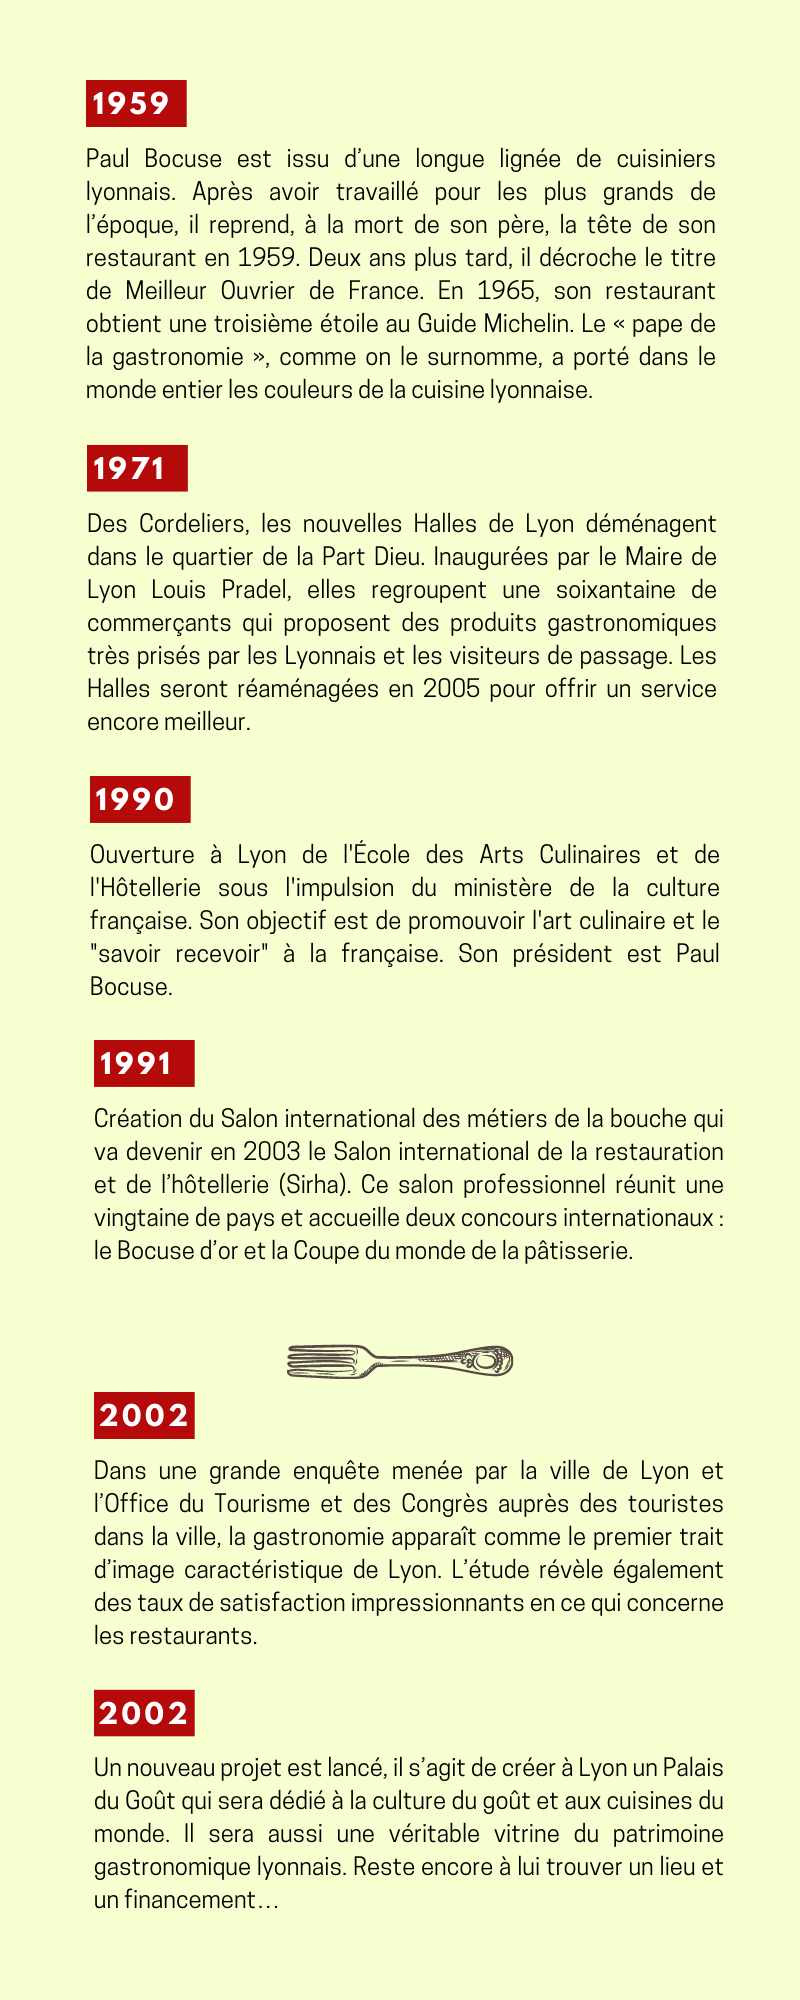 Chronologie sur le thème de la gastronomie de 1959 à 2002